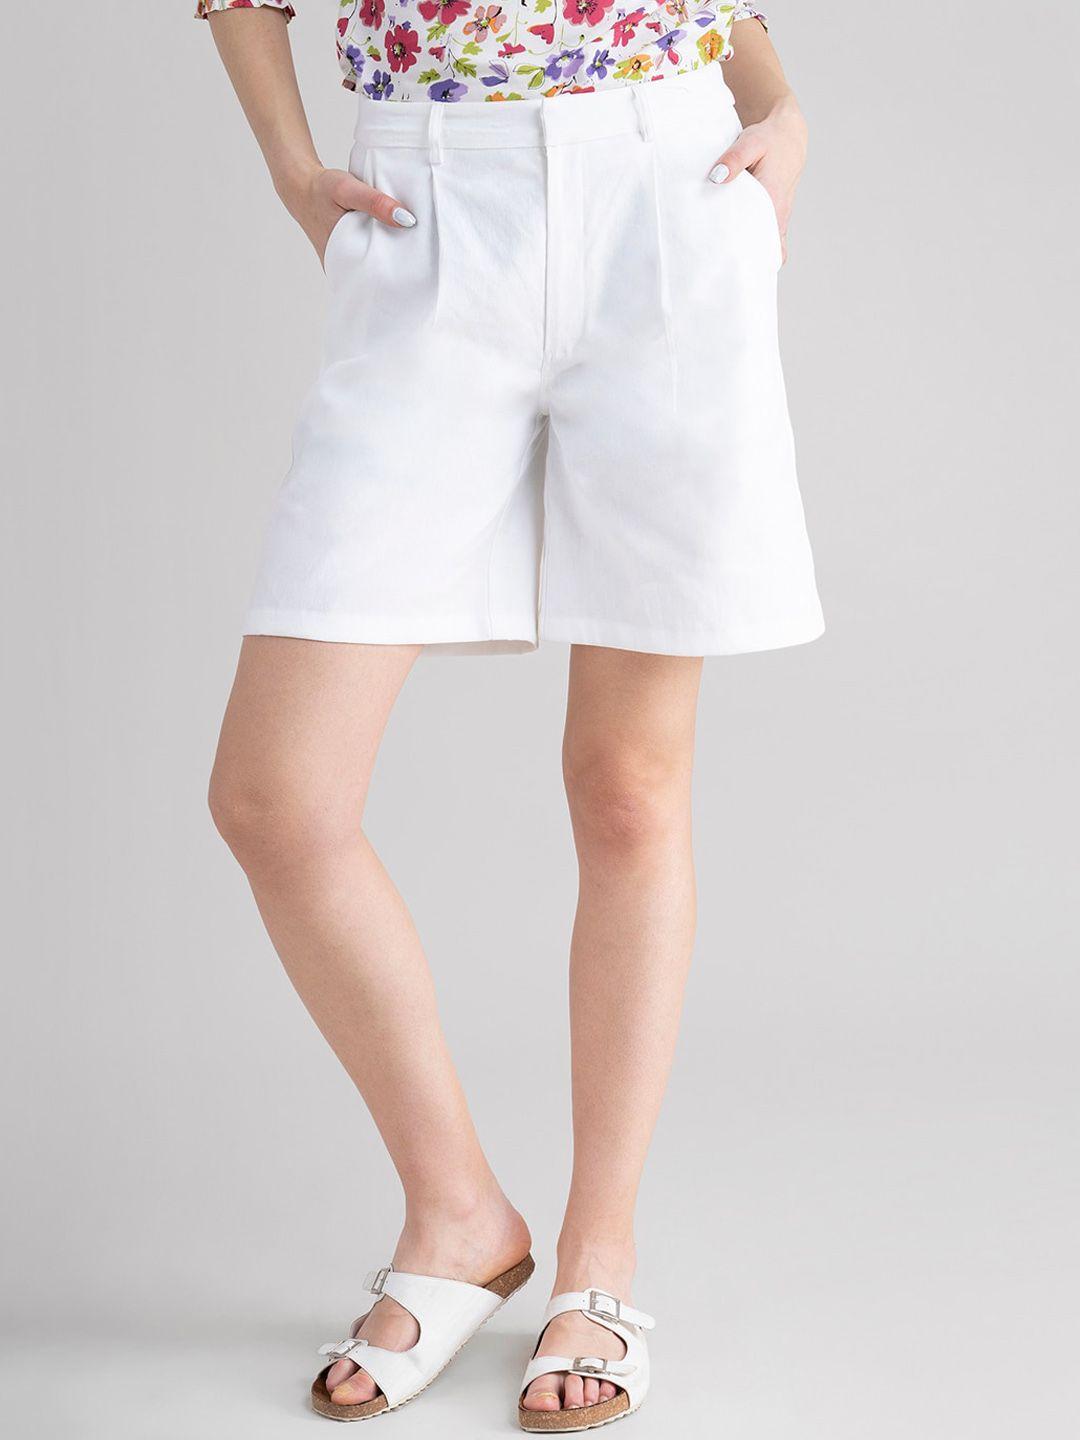 fablestreet women white shorts